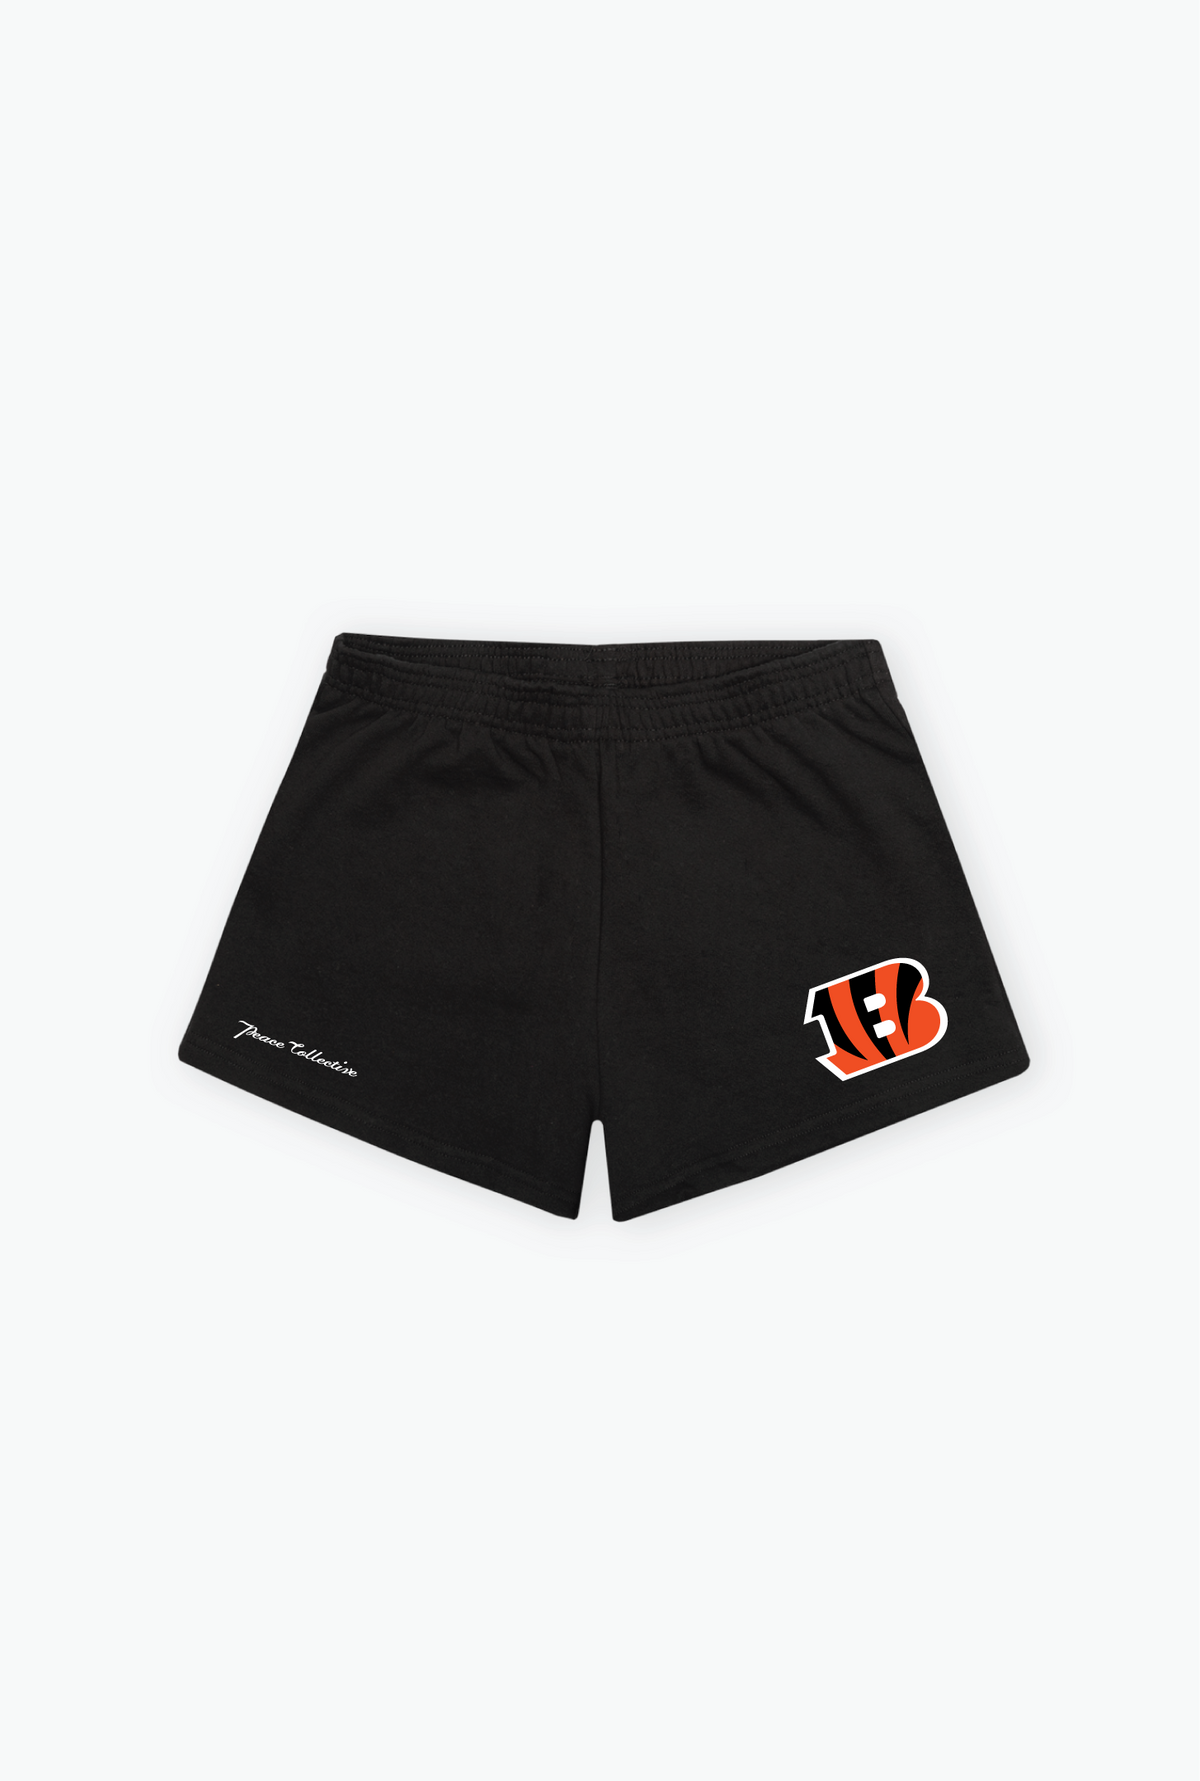 Cincinnati Bengals Women's Fleece Shorts - Black